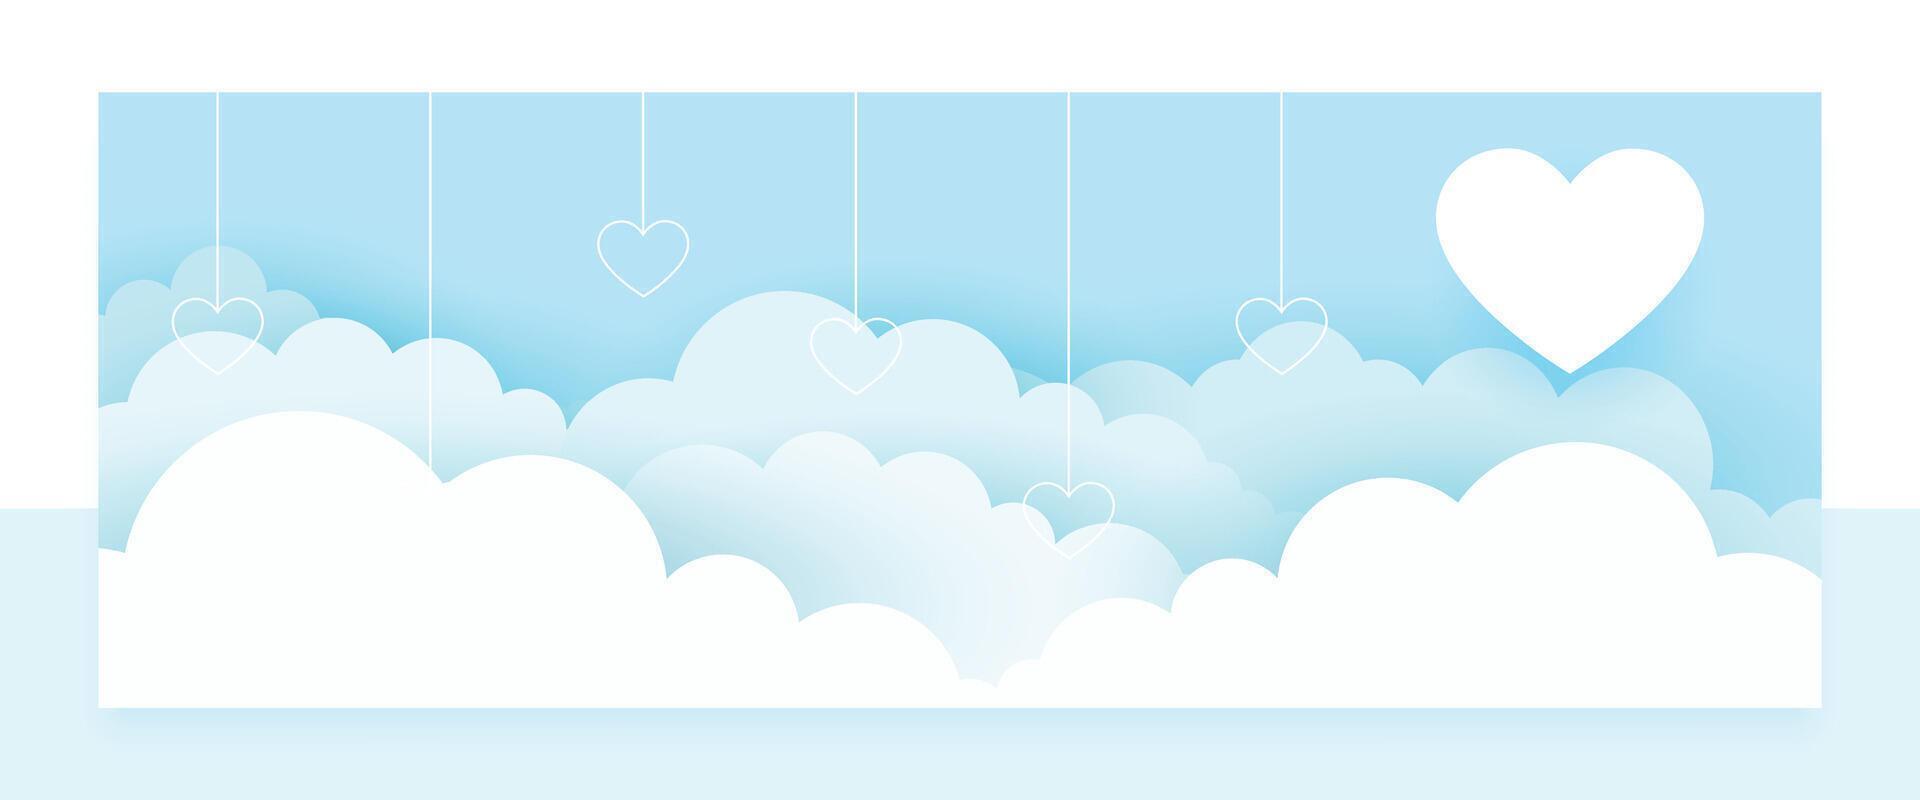 papel estilo linda corazón y nube fondo de pantalla diseño vector